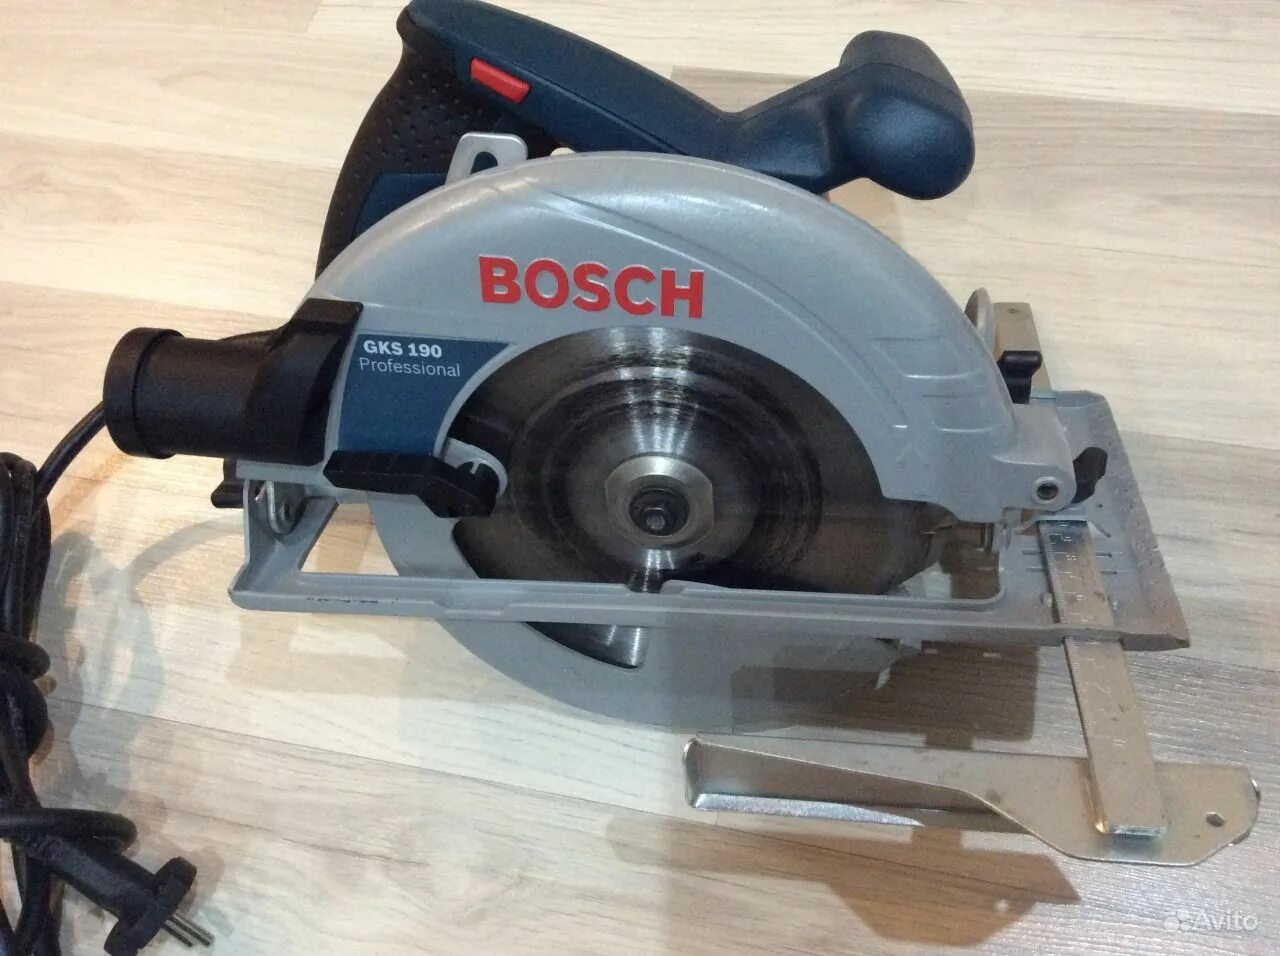 Bosch GKS 190. Bosch 190 GKS циркулярка. Церкулярная пила "Bosch" GKS 190. Bosch GKS 190, 1400 Вт. Пила бош gks 190